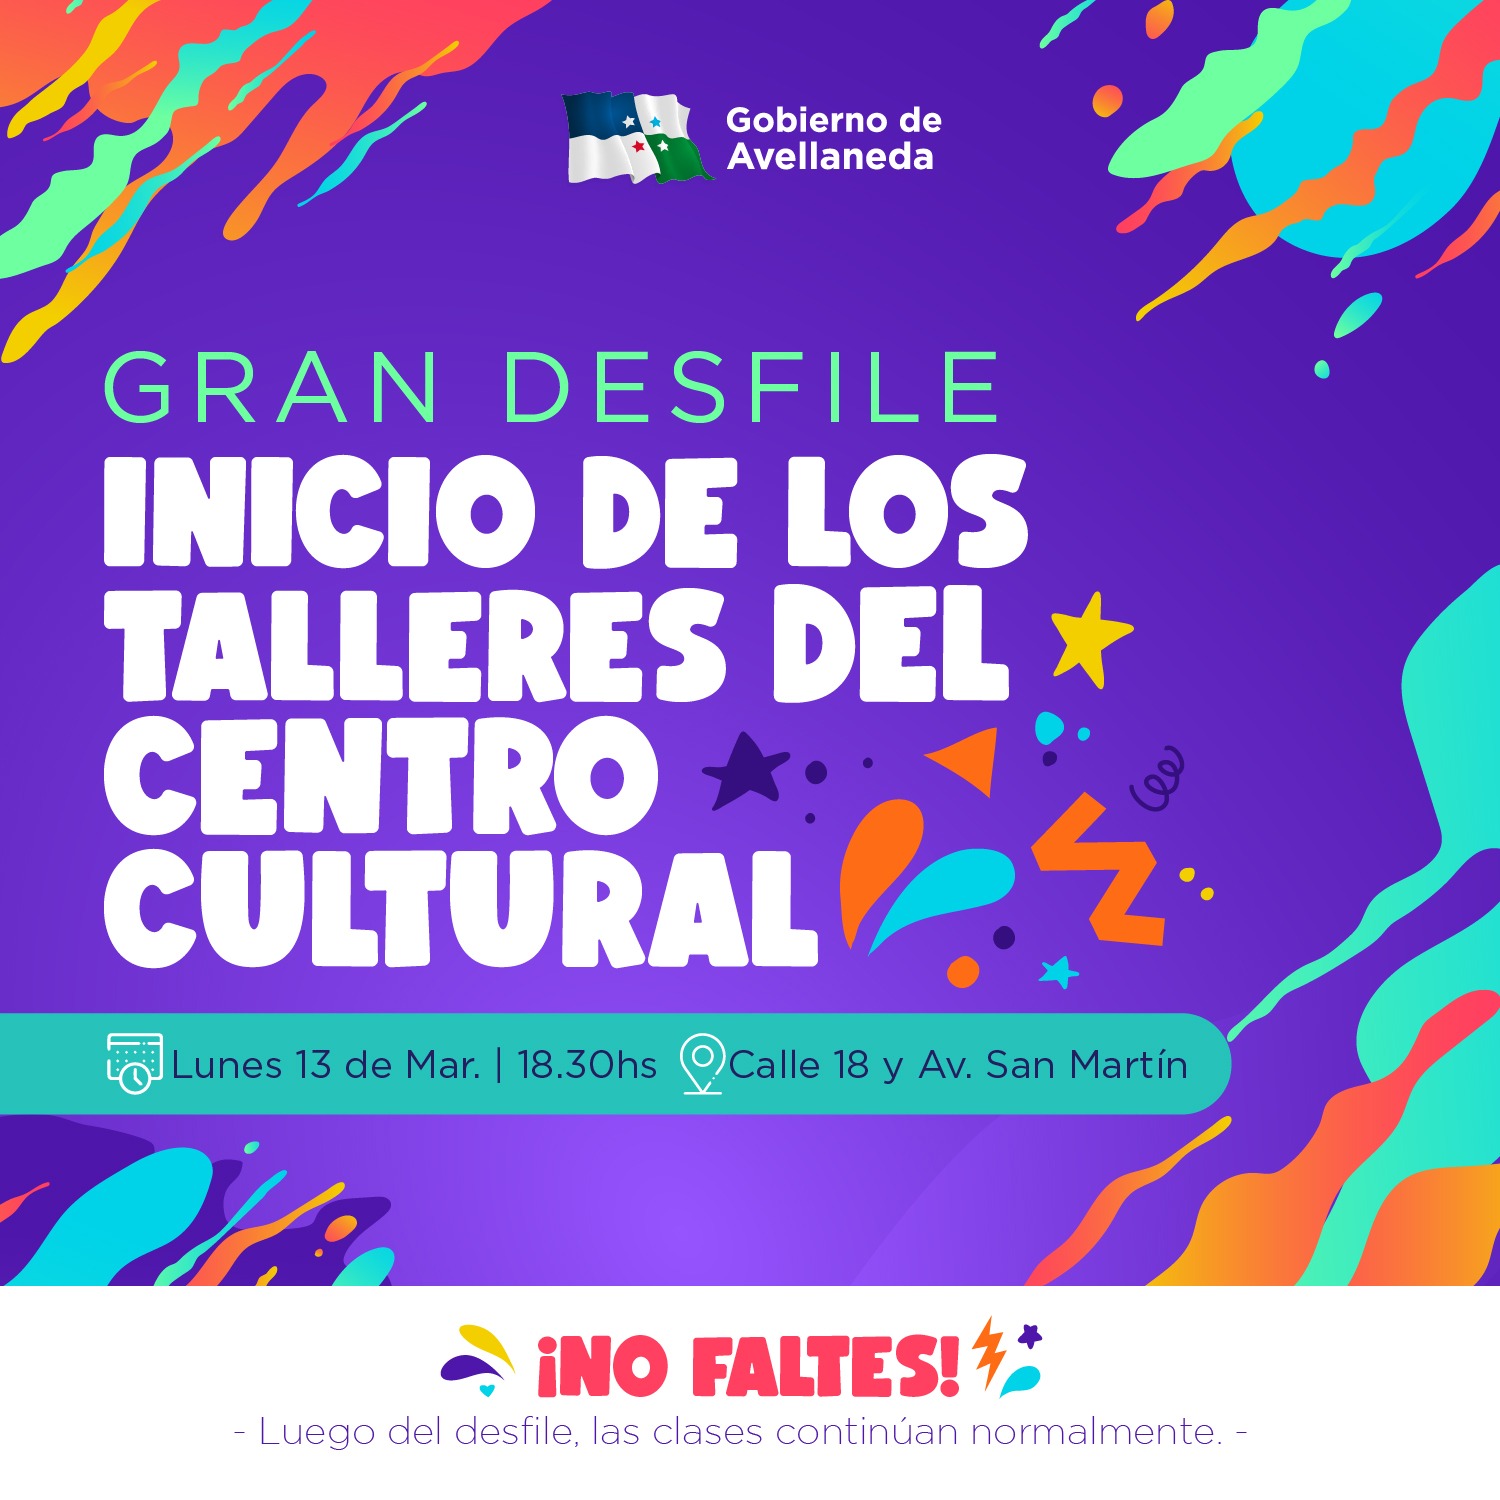 Inician los talleres del Centro Cultural Municipal de Avellaneda